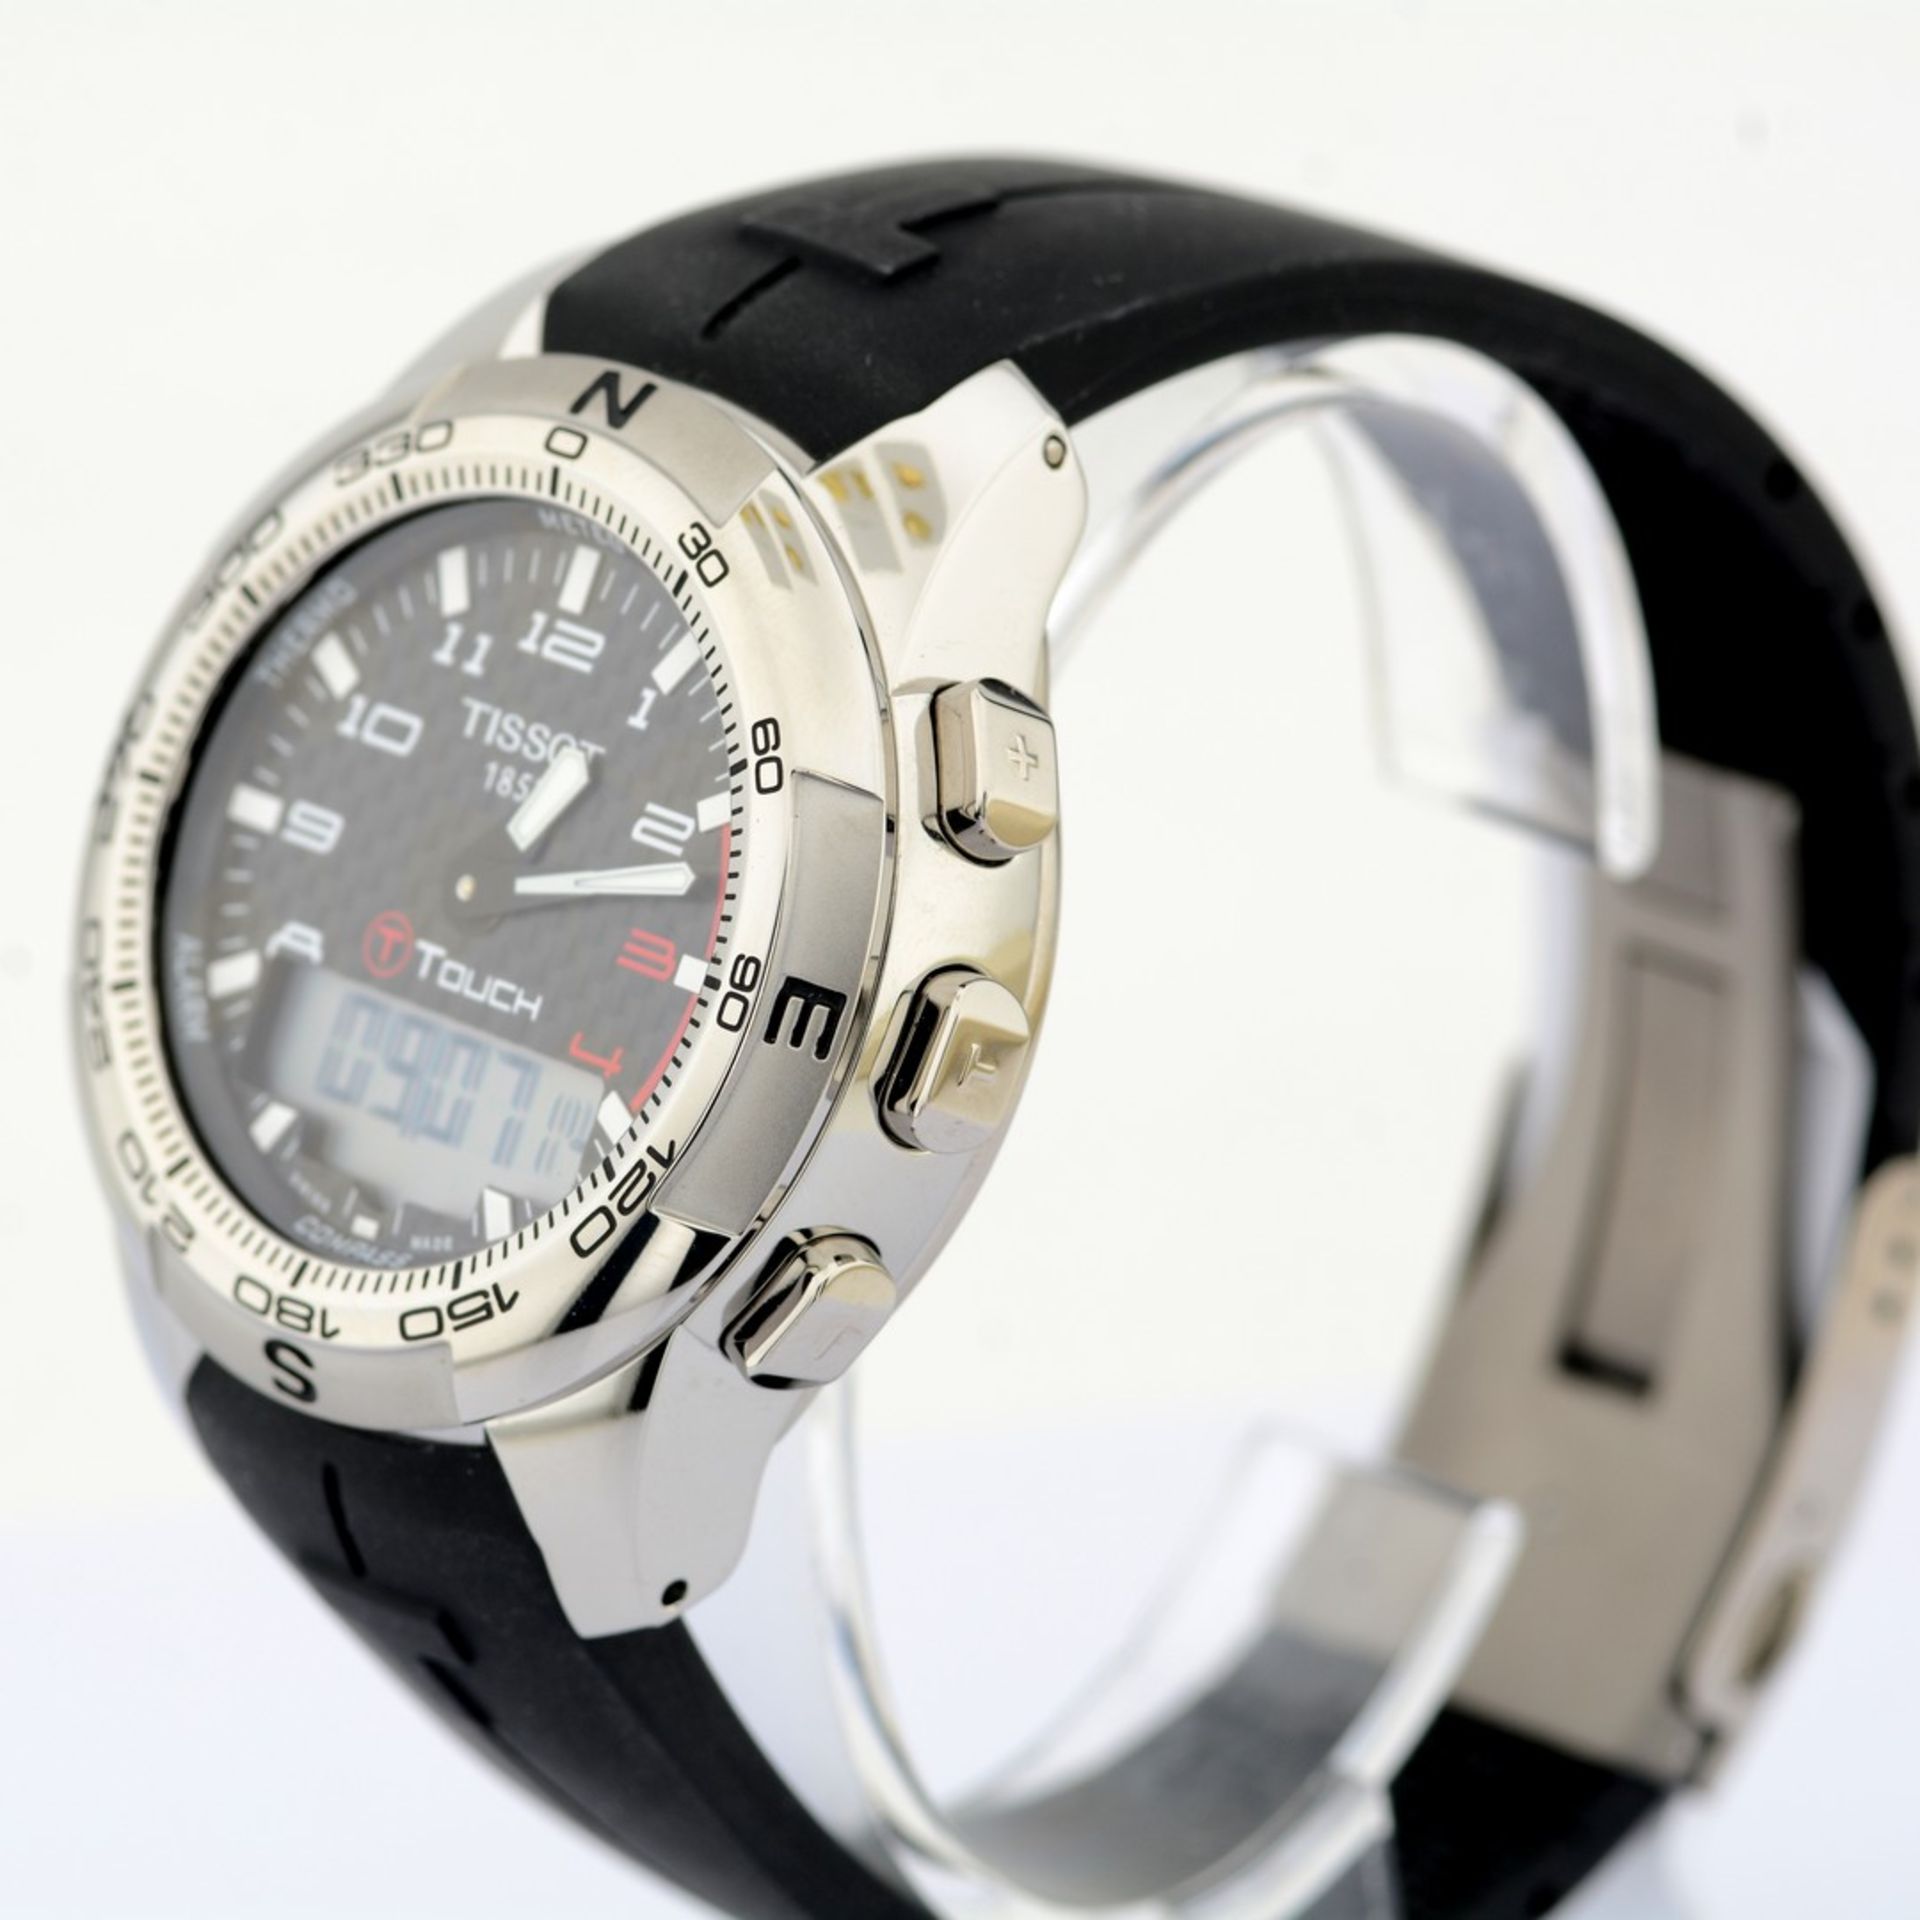 Tissot / T-Touch II Smart (New) - Gentlmen's Steel Wrist Watch - Image 6 of 12